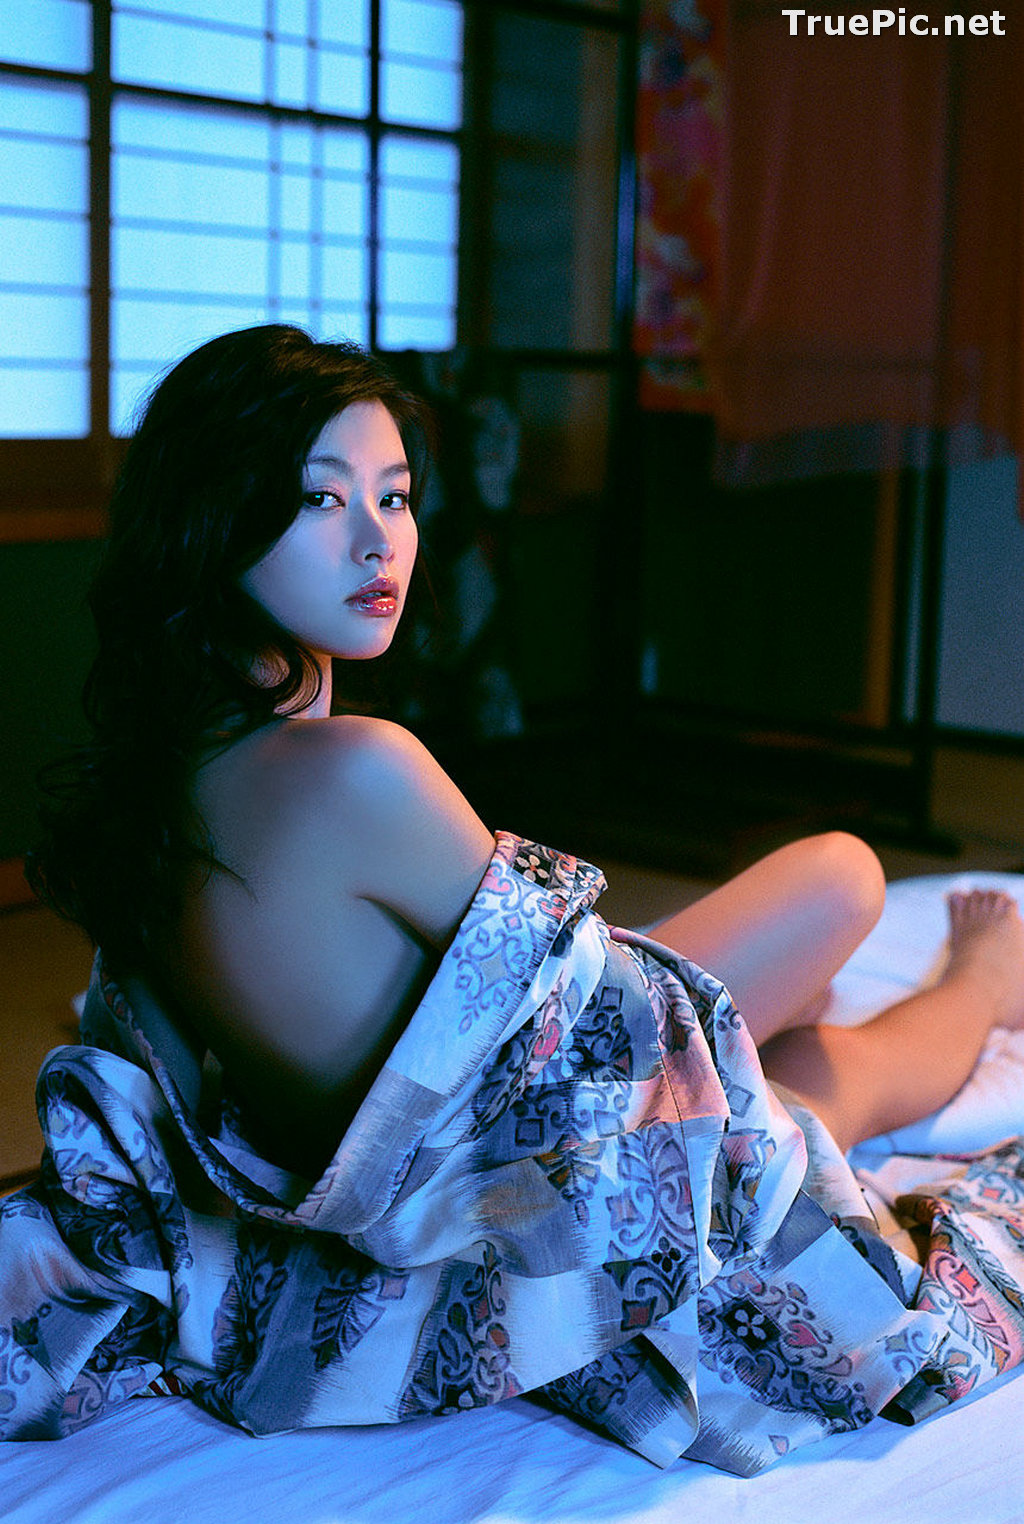 Image Japanese Actress and Model - Sayaka Yoshino - Saya Photo Album - TruePic.net - Picture-28